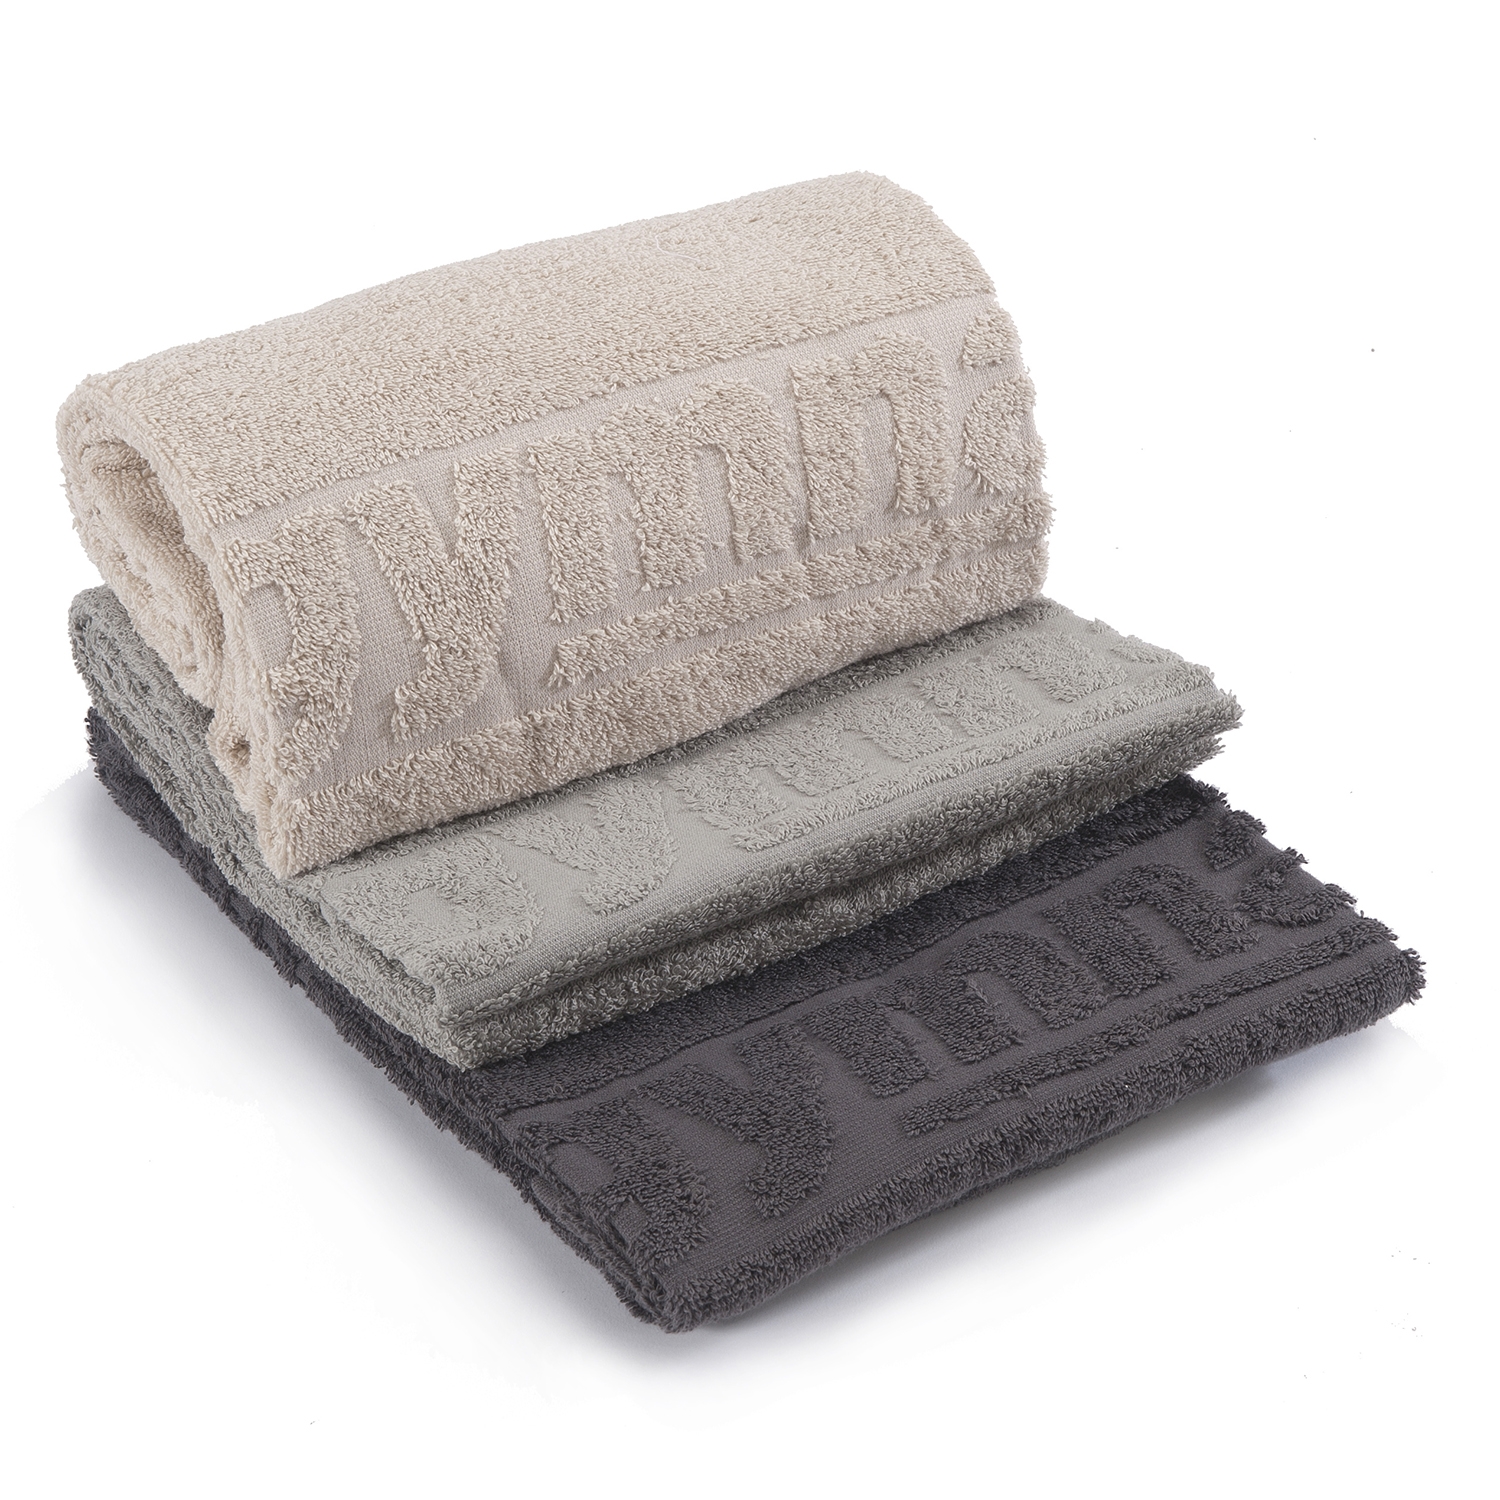 Handdoek badstof - klein - 50 x 100 cm